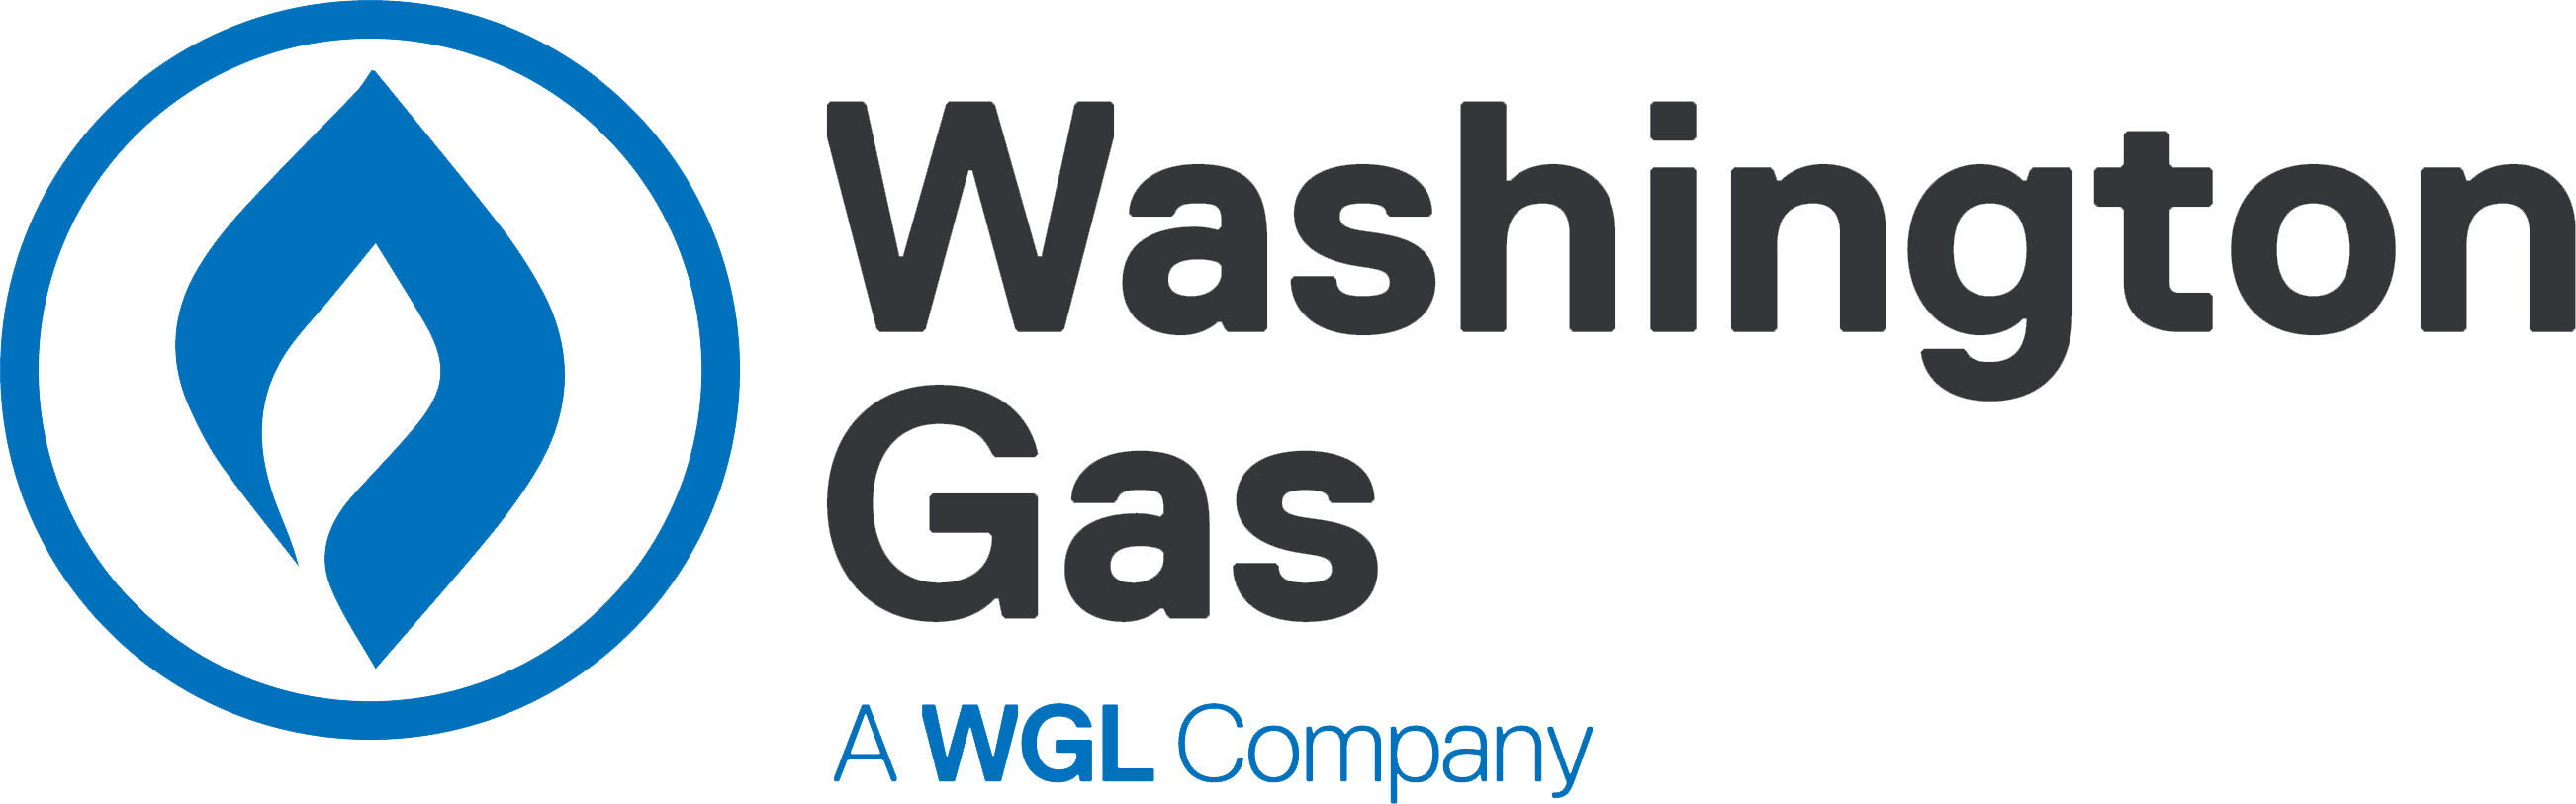 Washington gas logo